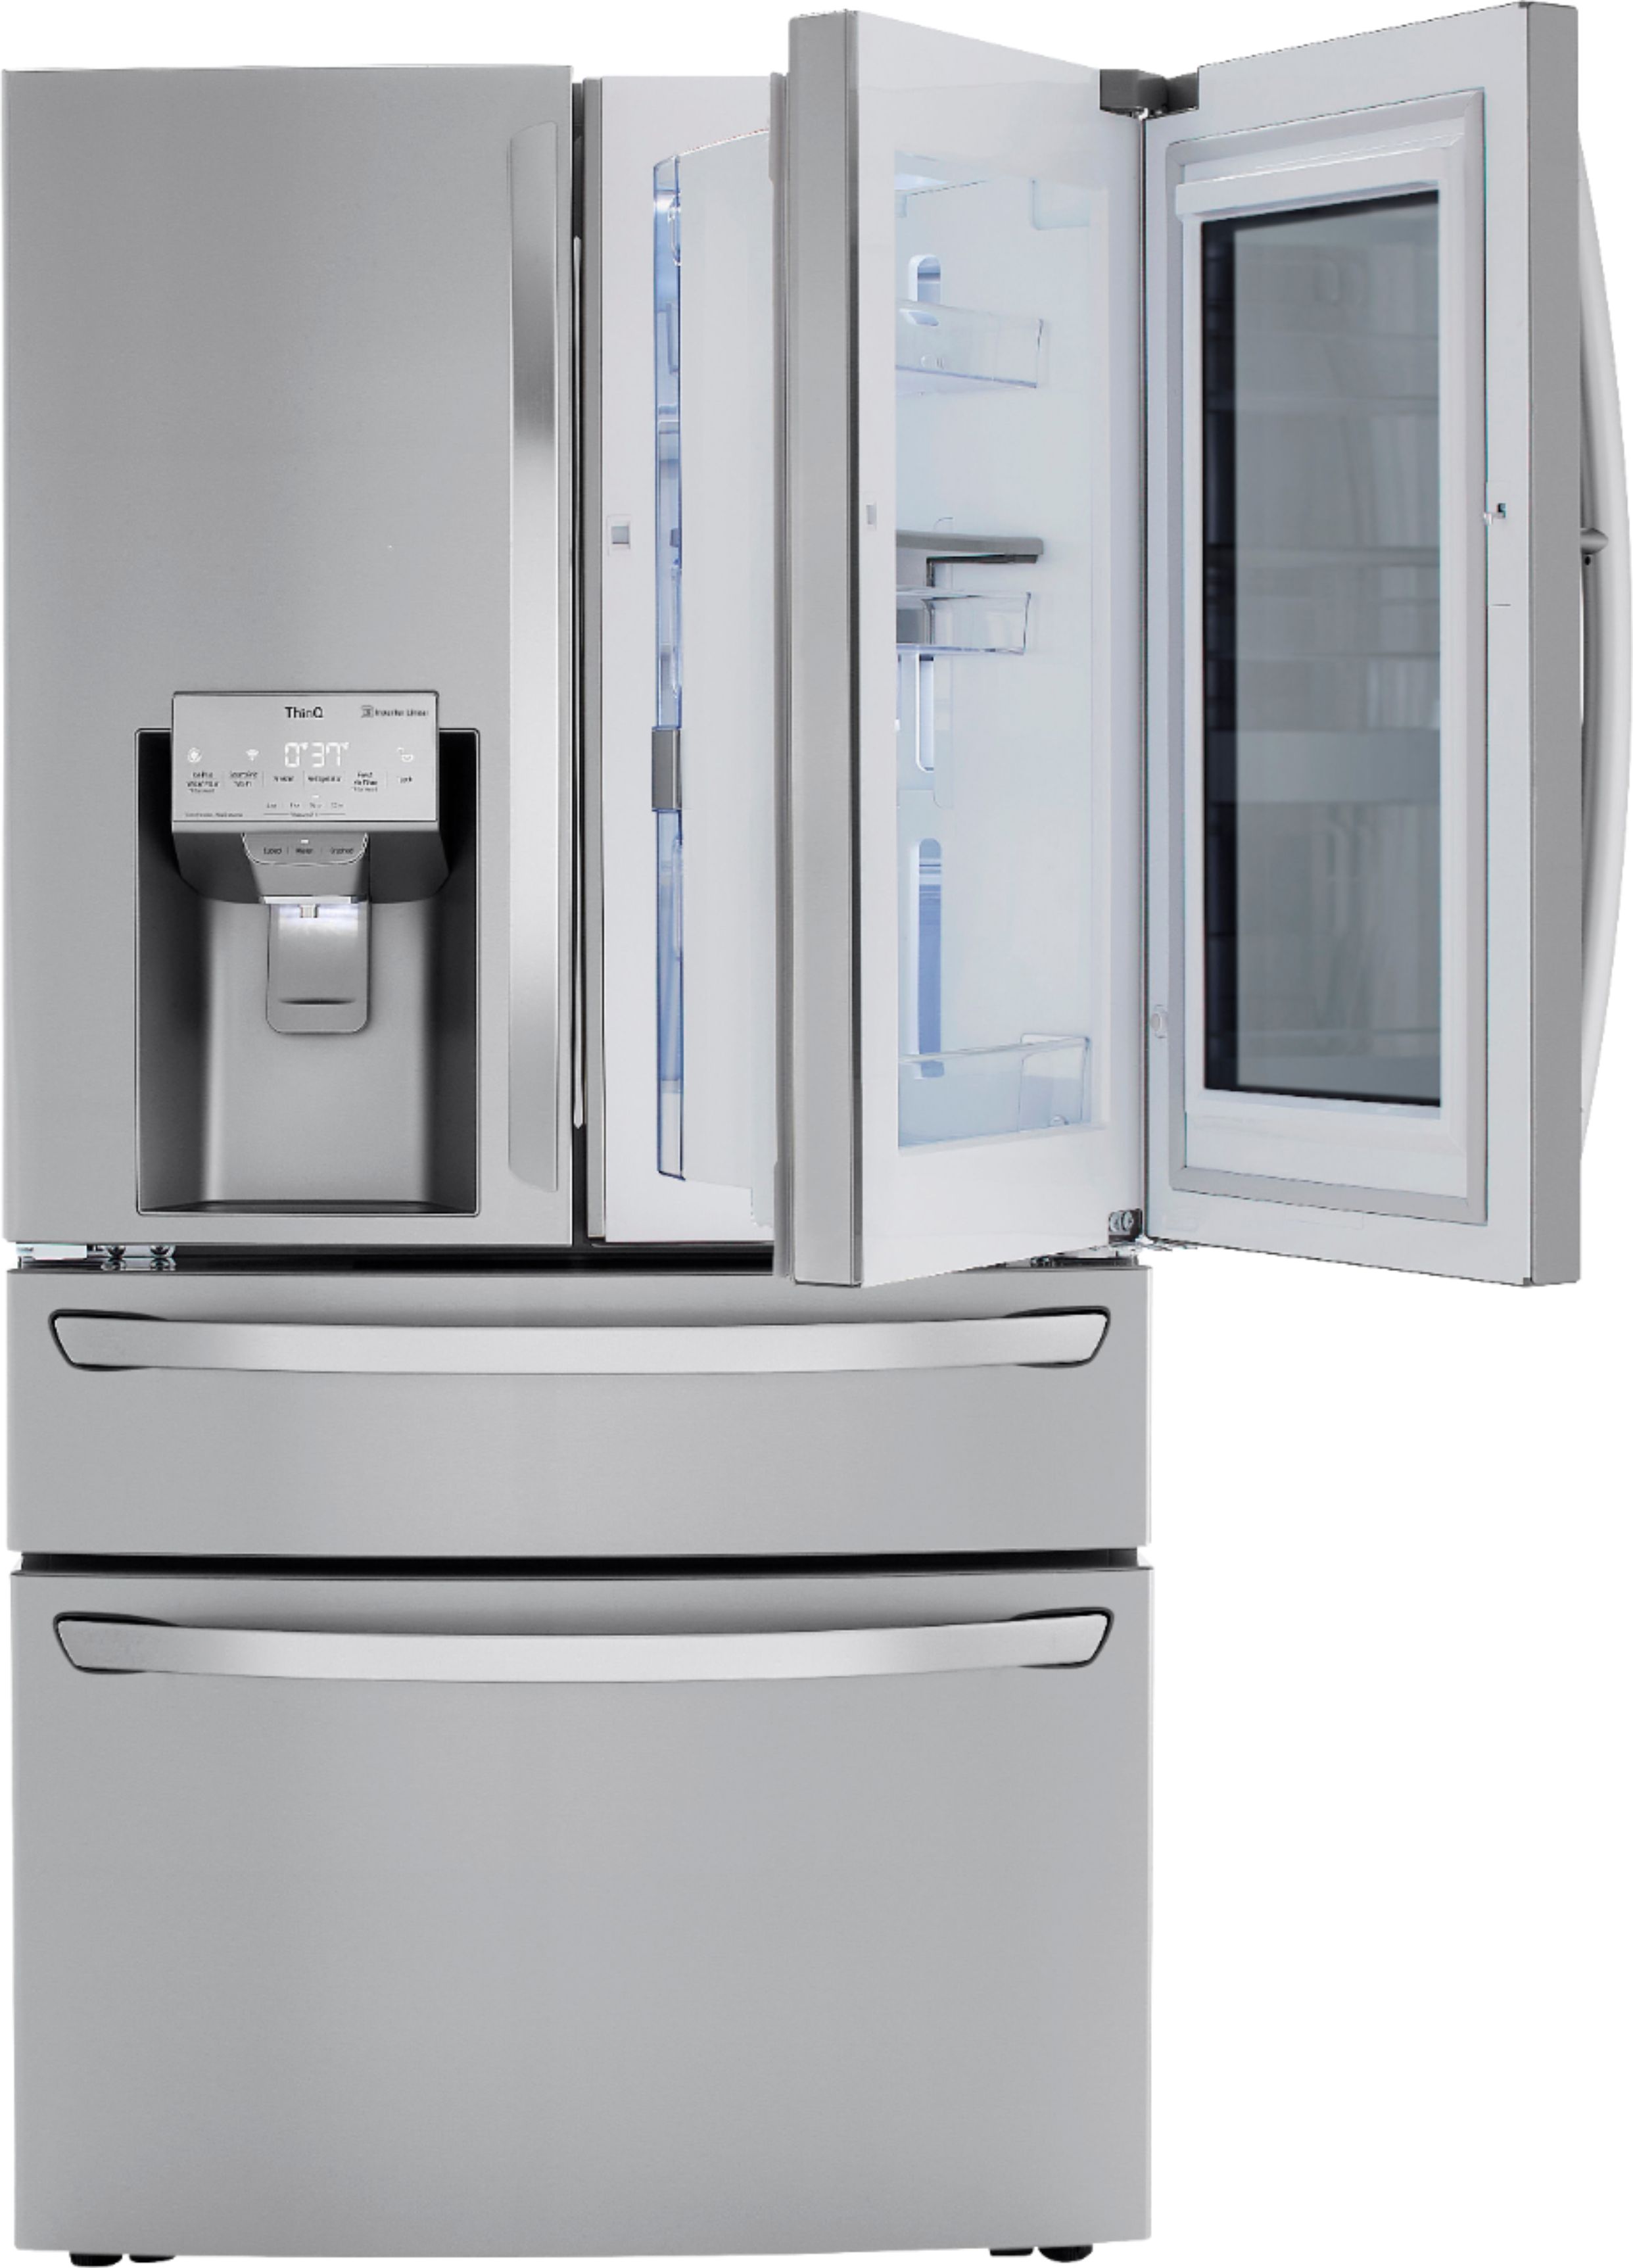 LG 22.5 Cu. Ft. 4-Door French Door Counter-Depth Refrigerator with ...